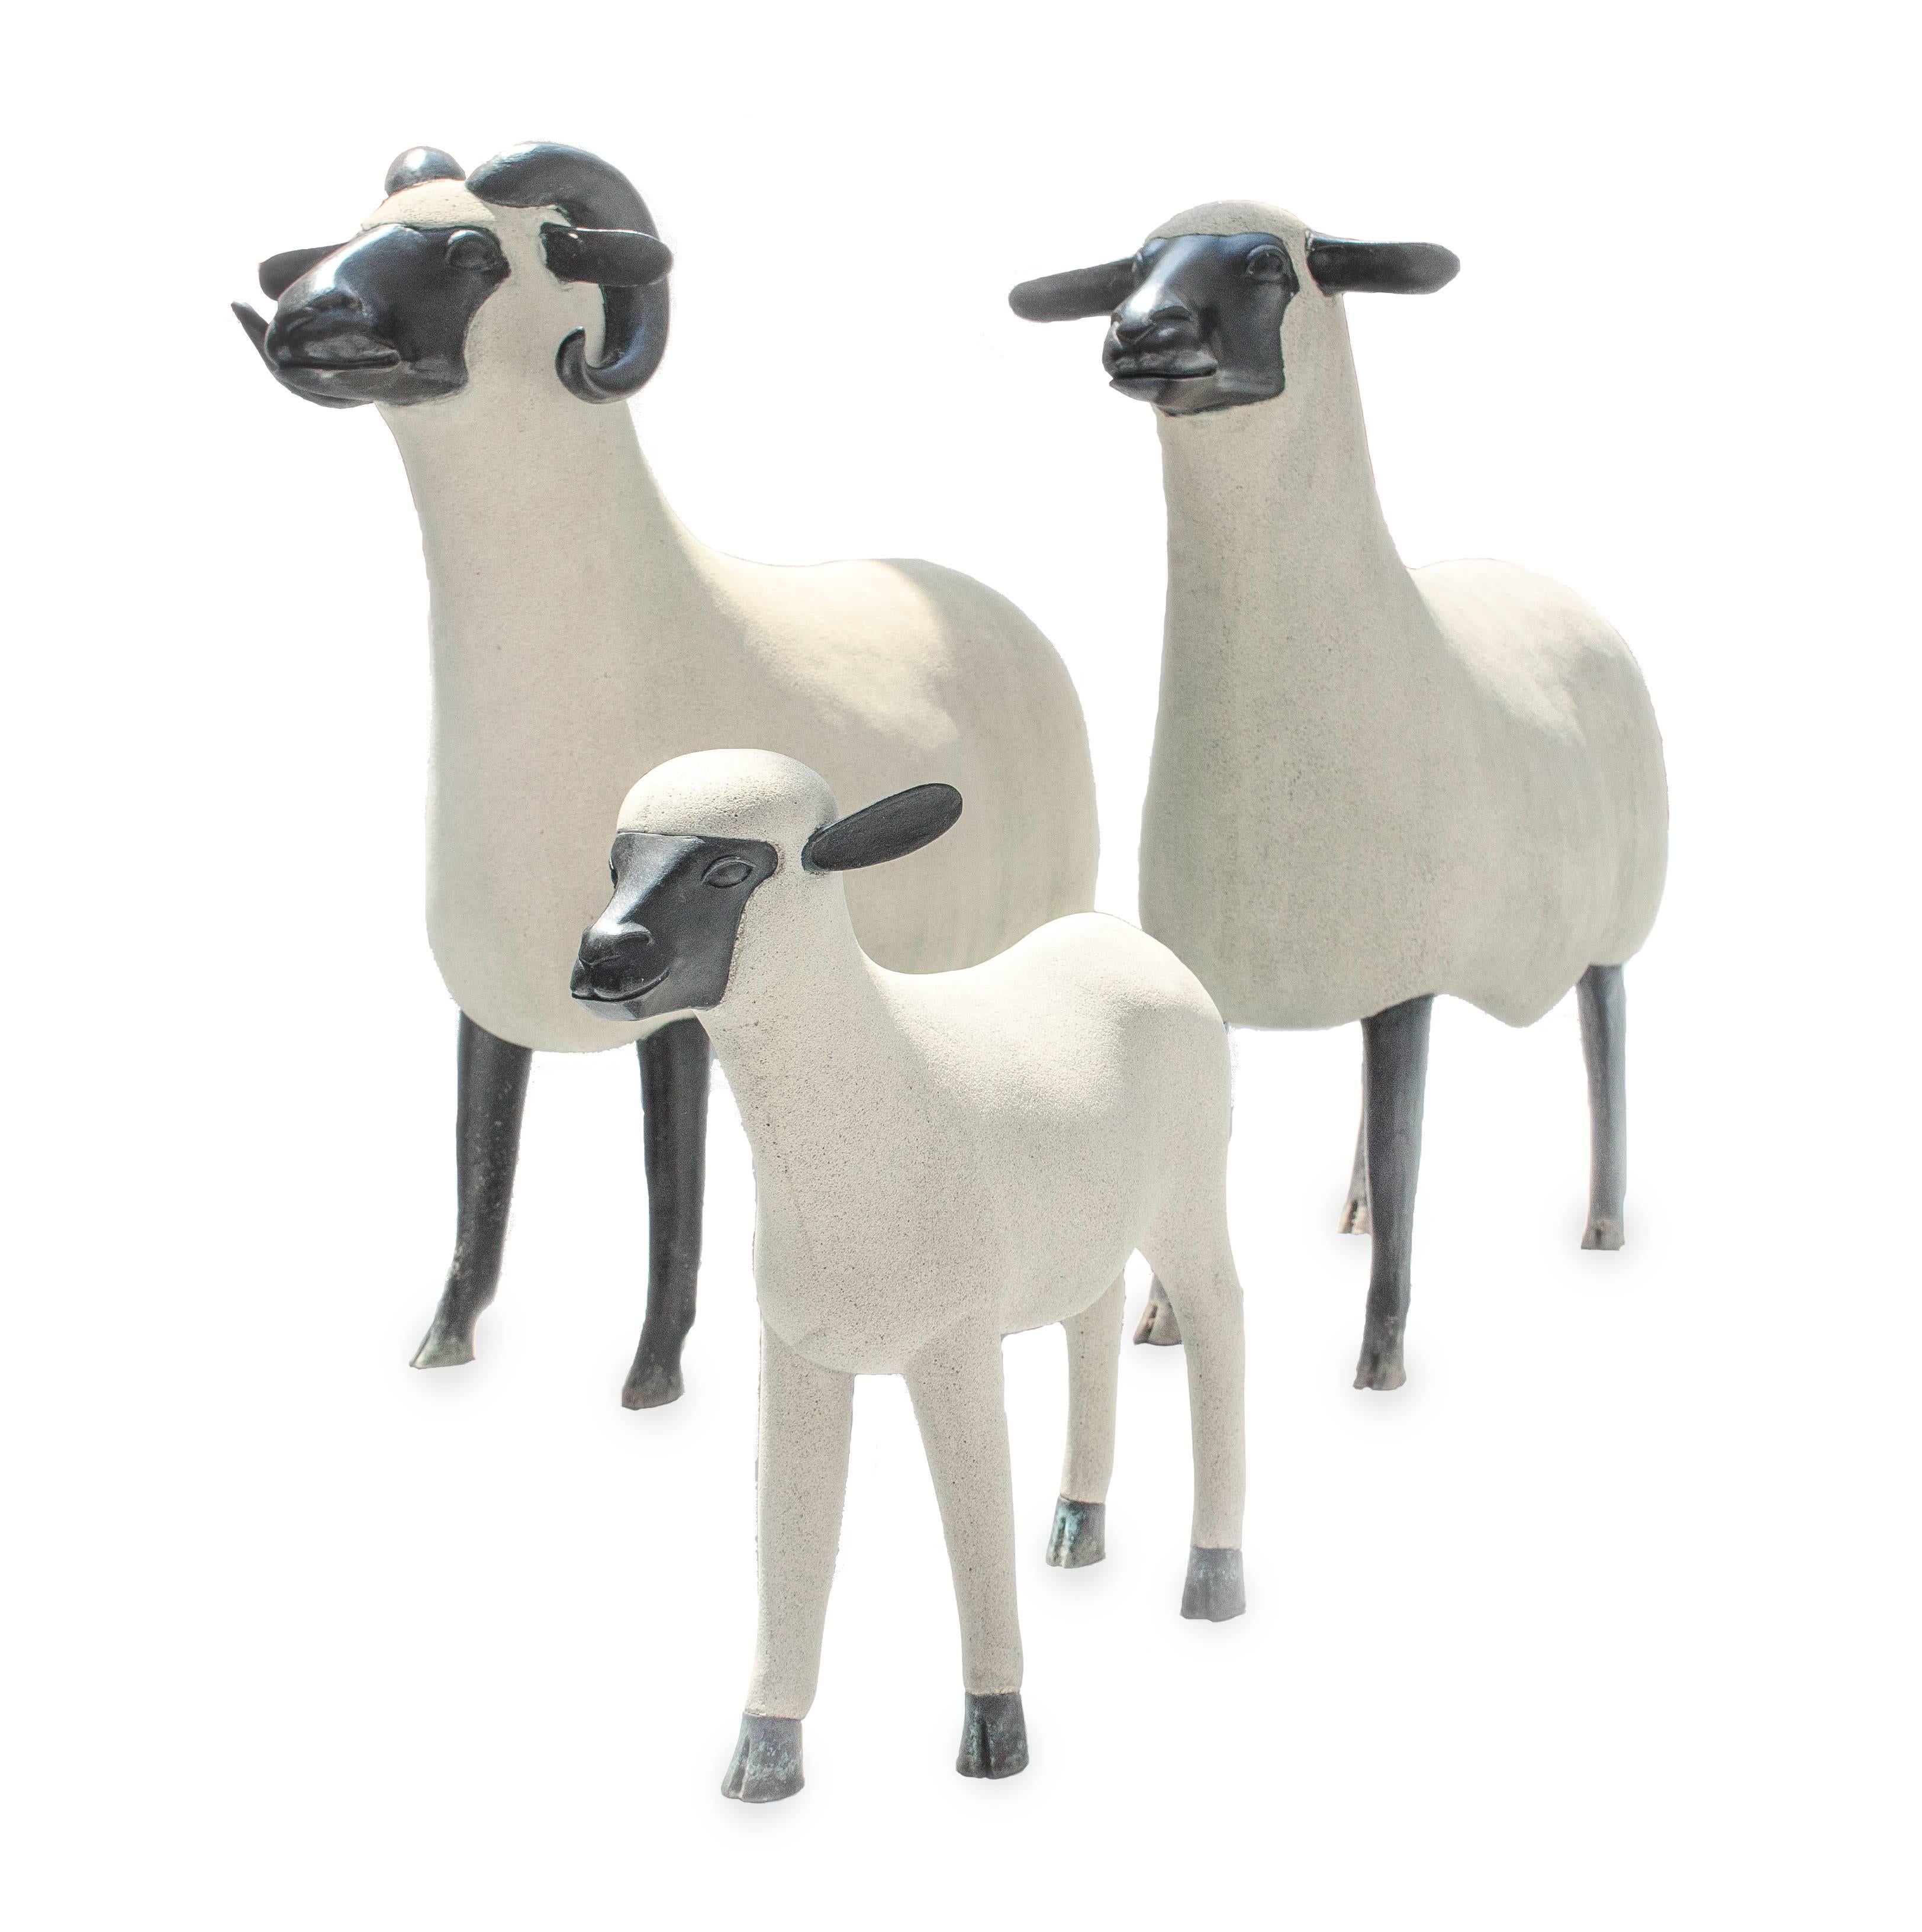 Francois-Xavier Lalanne Figurative Sculpture - Brebis, Belier and Agneau (from the Nouveaux Mouton series)